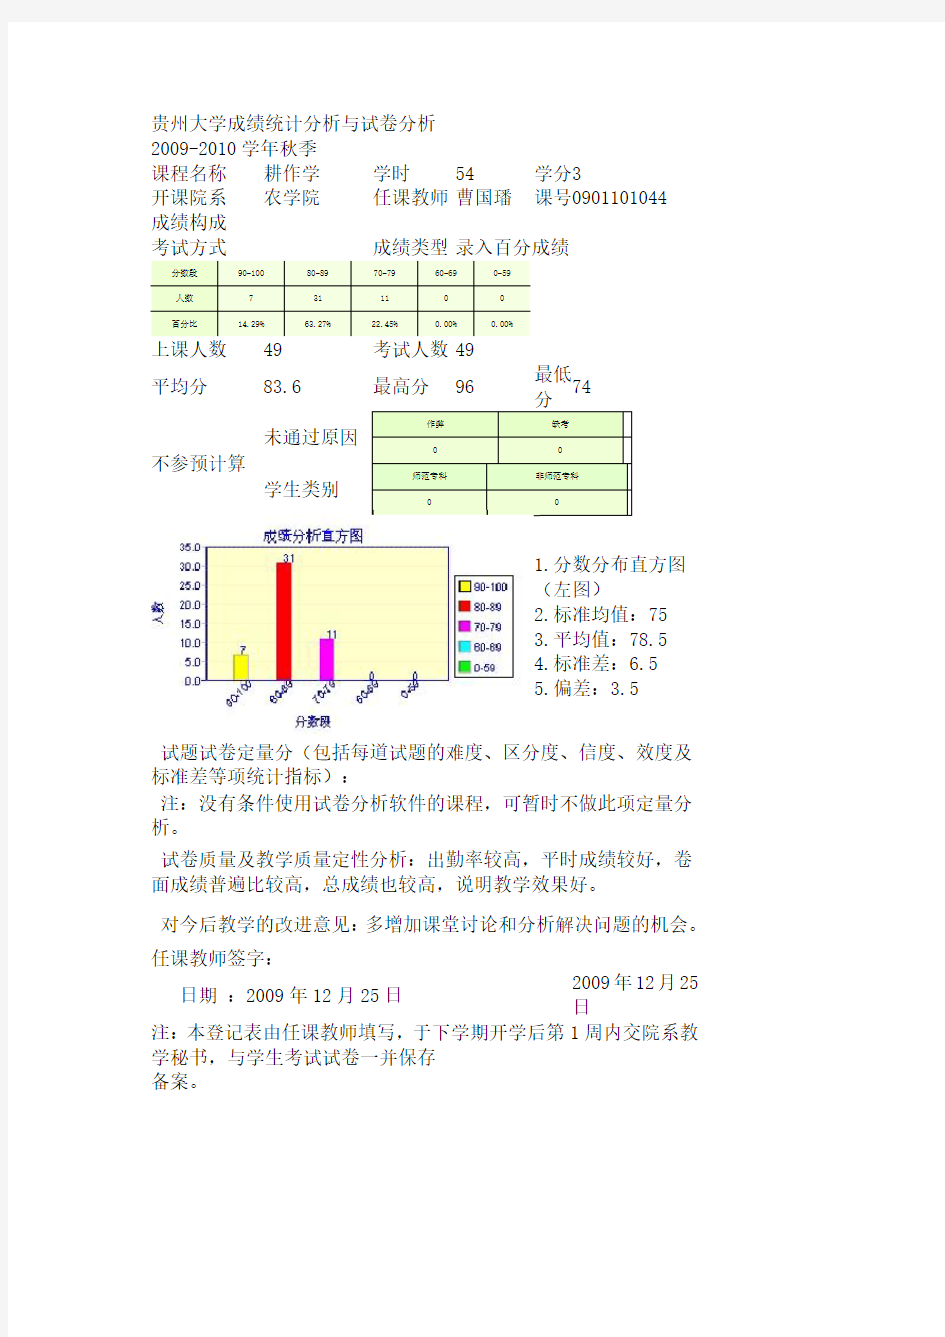 贵州大学期末成绩统计分析与试卷分析